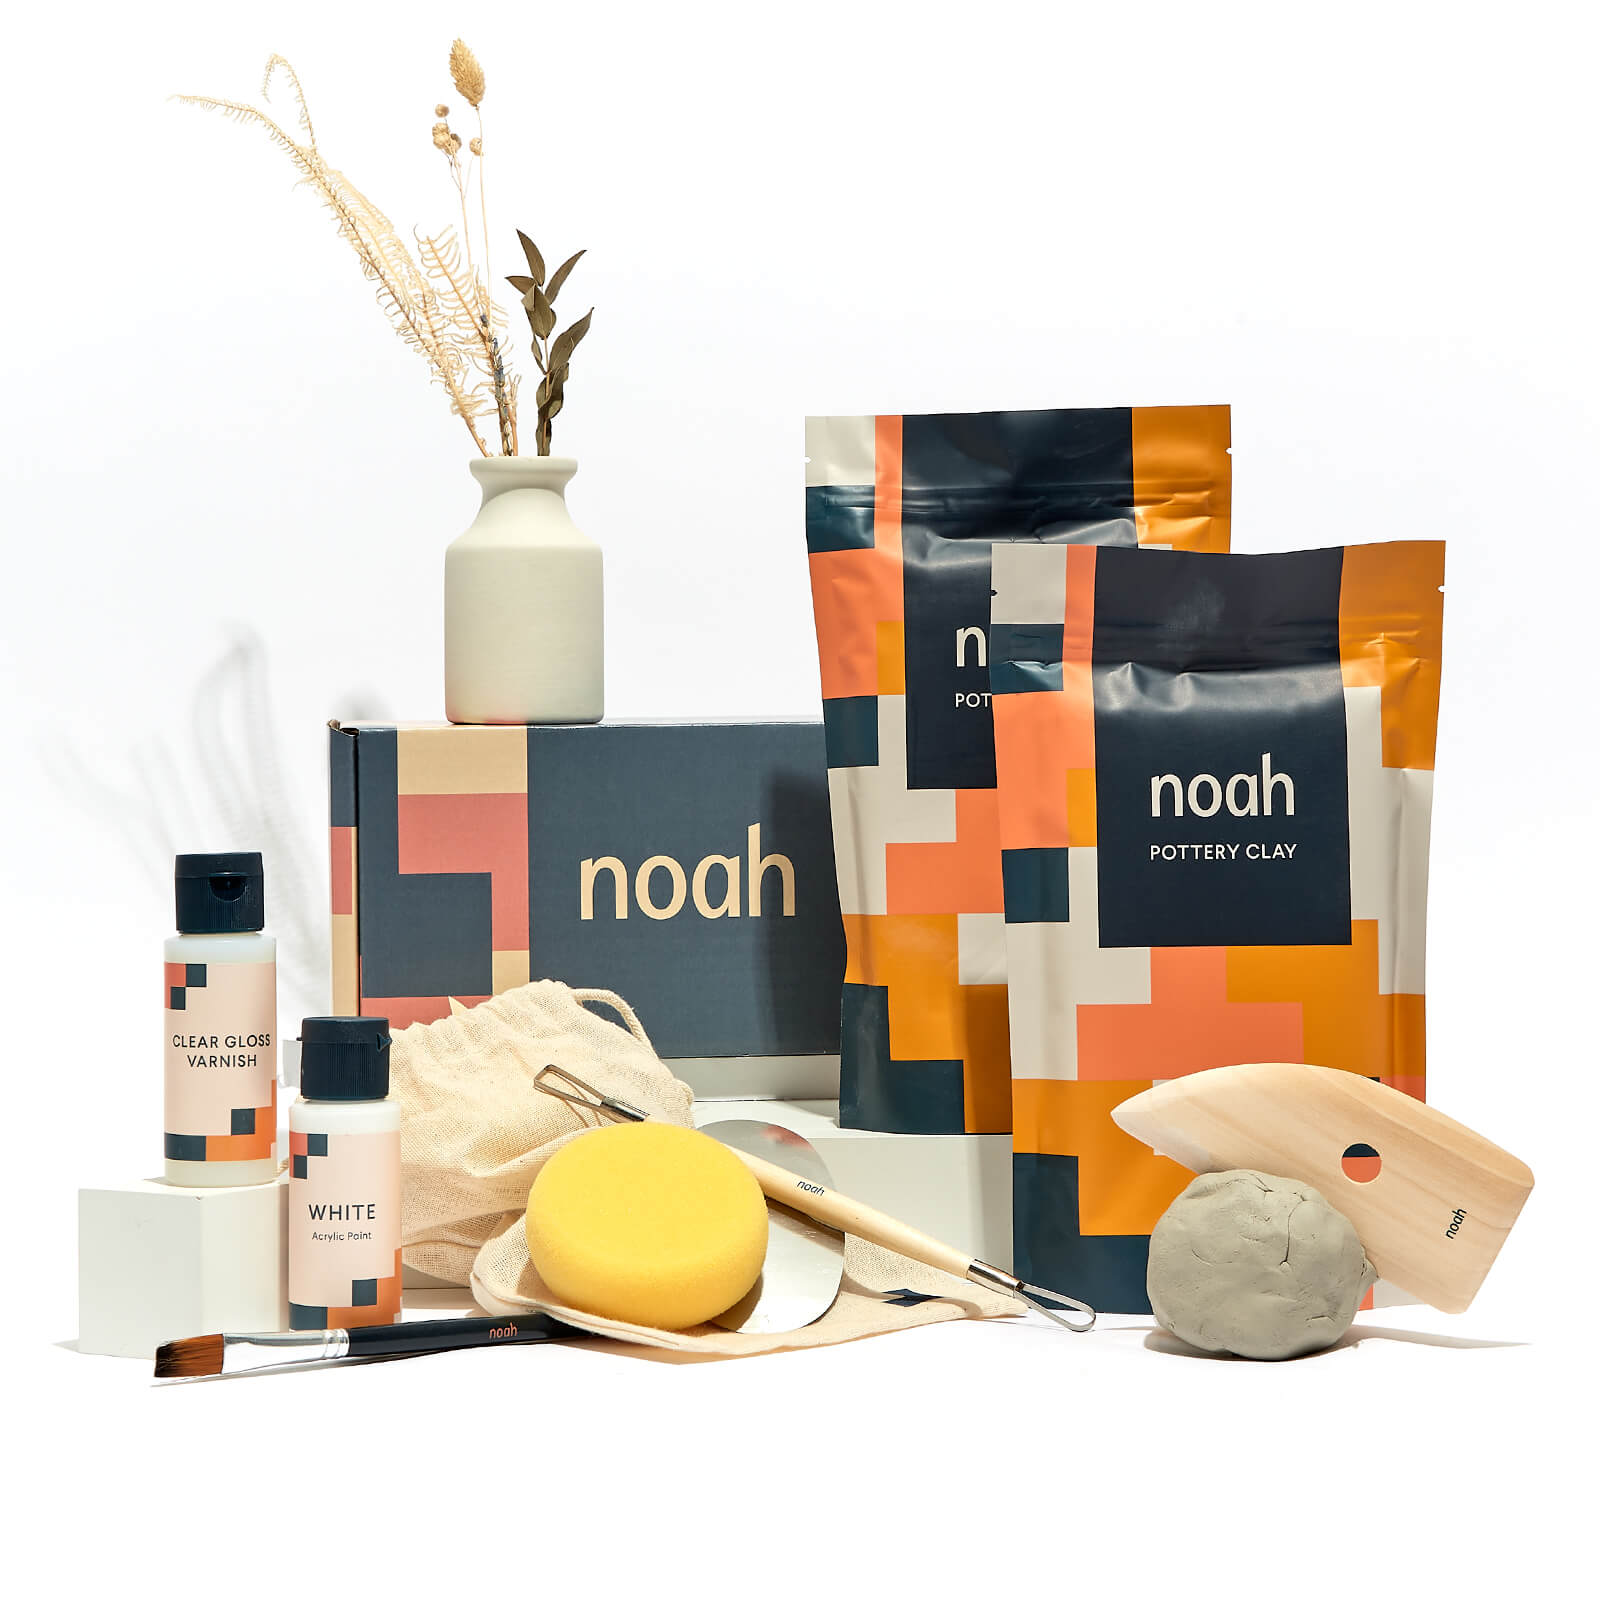 Kit de inicio de cerámica – noah - EU